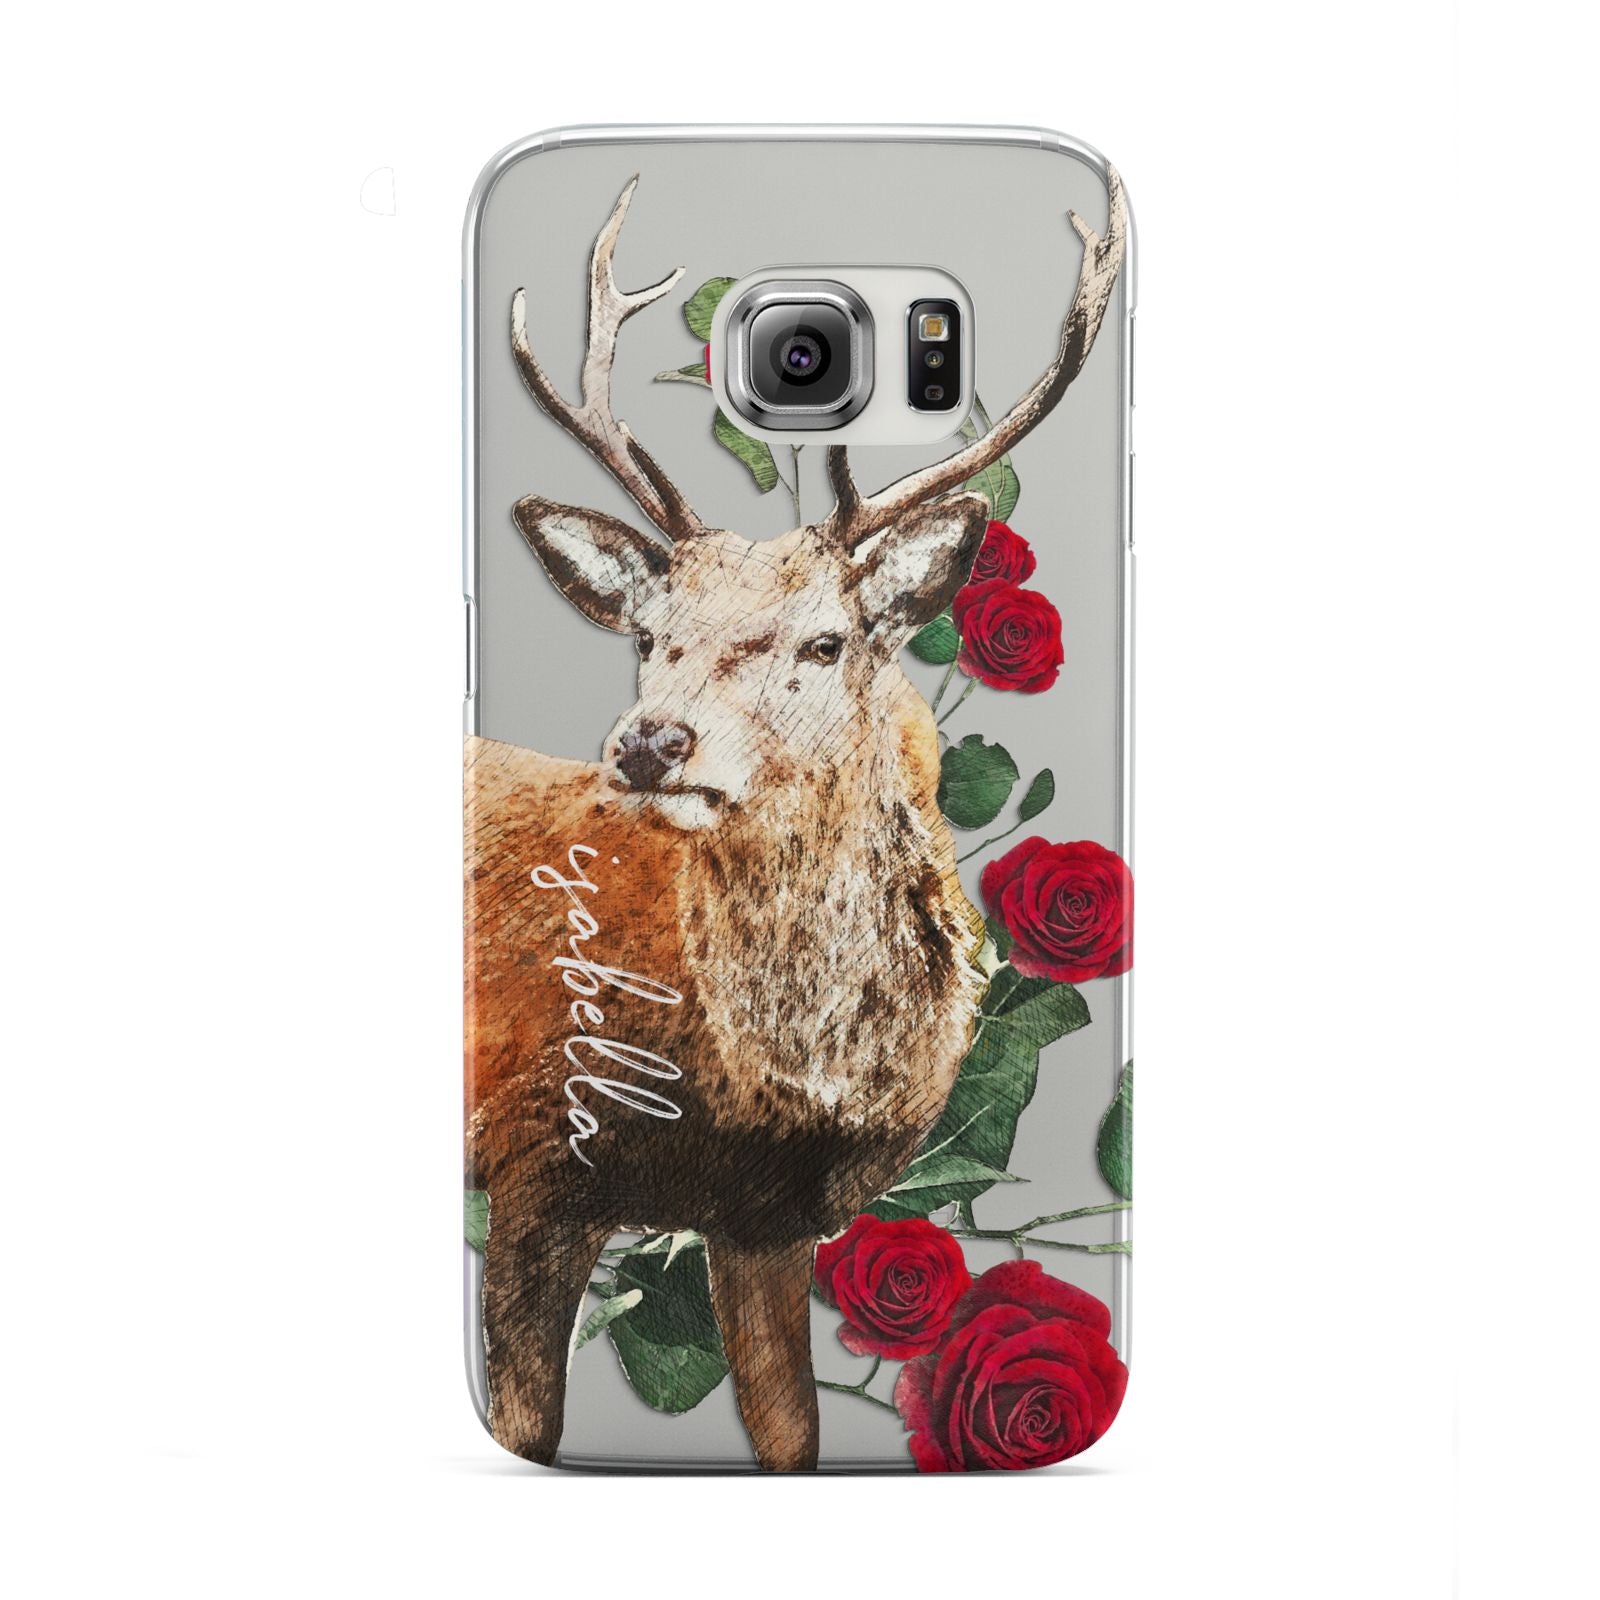 Personalised Deer Name Samsung Galaxy S6 Edge Case